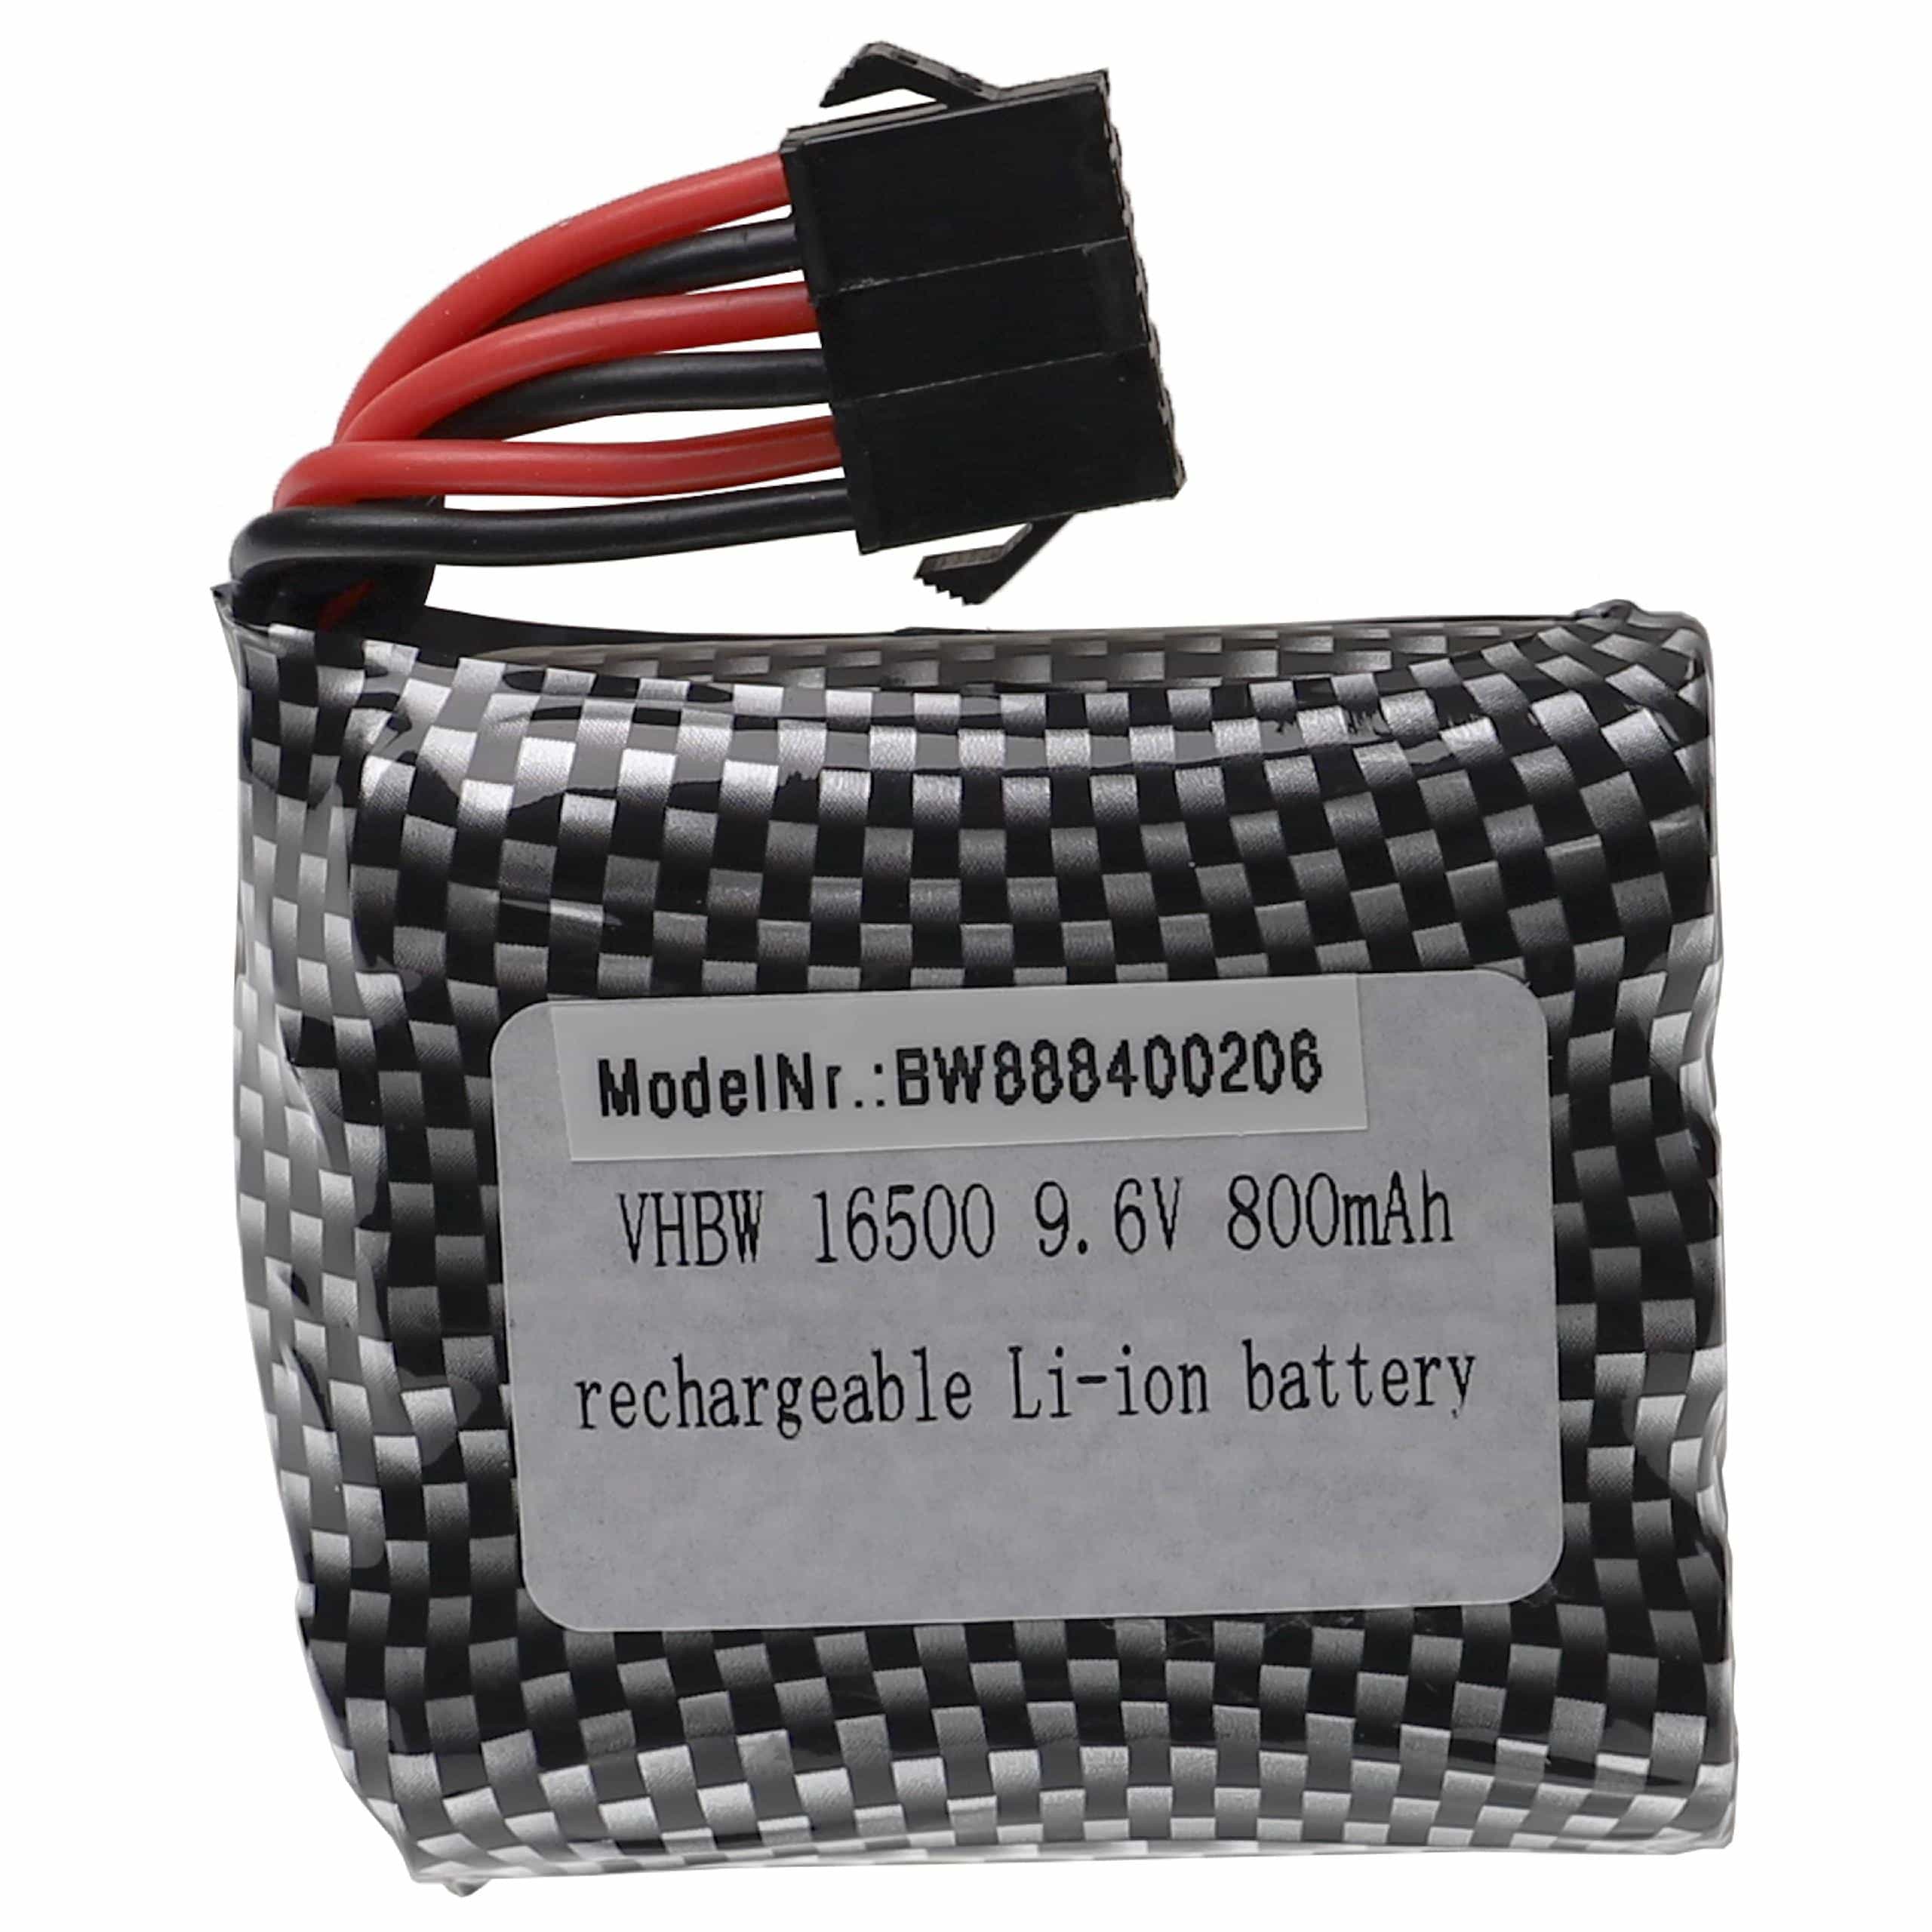 Batterie remplace GPToys 16500-3S1P pour modèle radio-télécommandé - 800mAh 9,6V Li-ion, SM-6P